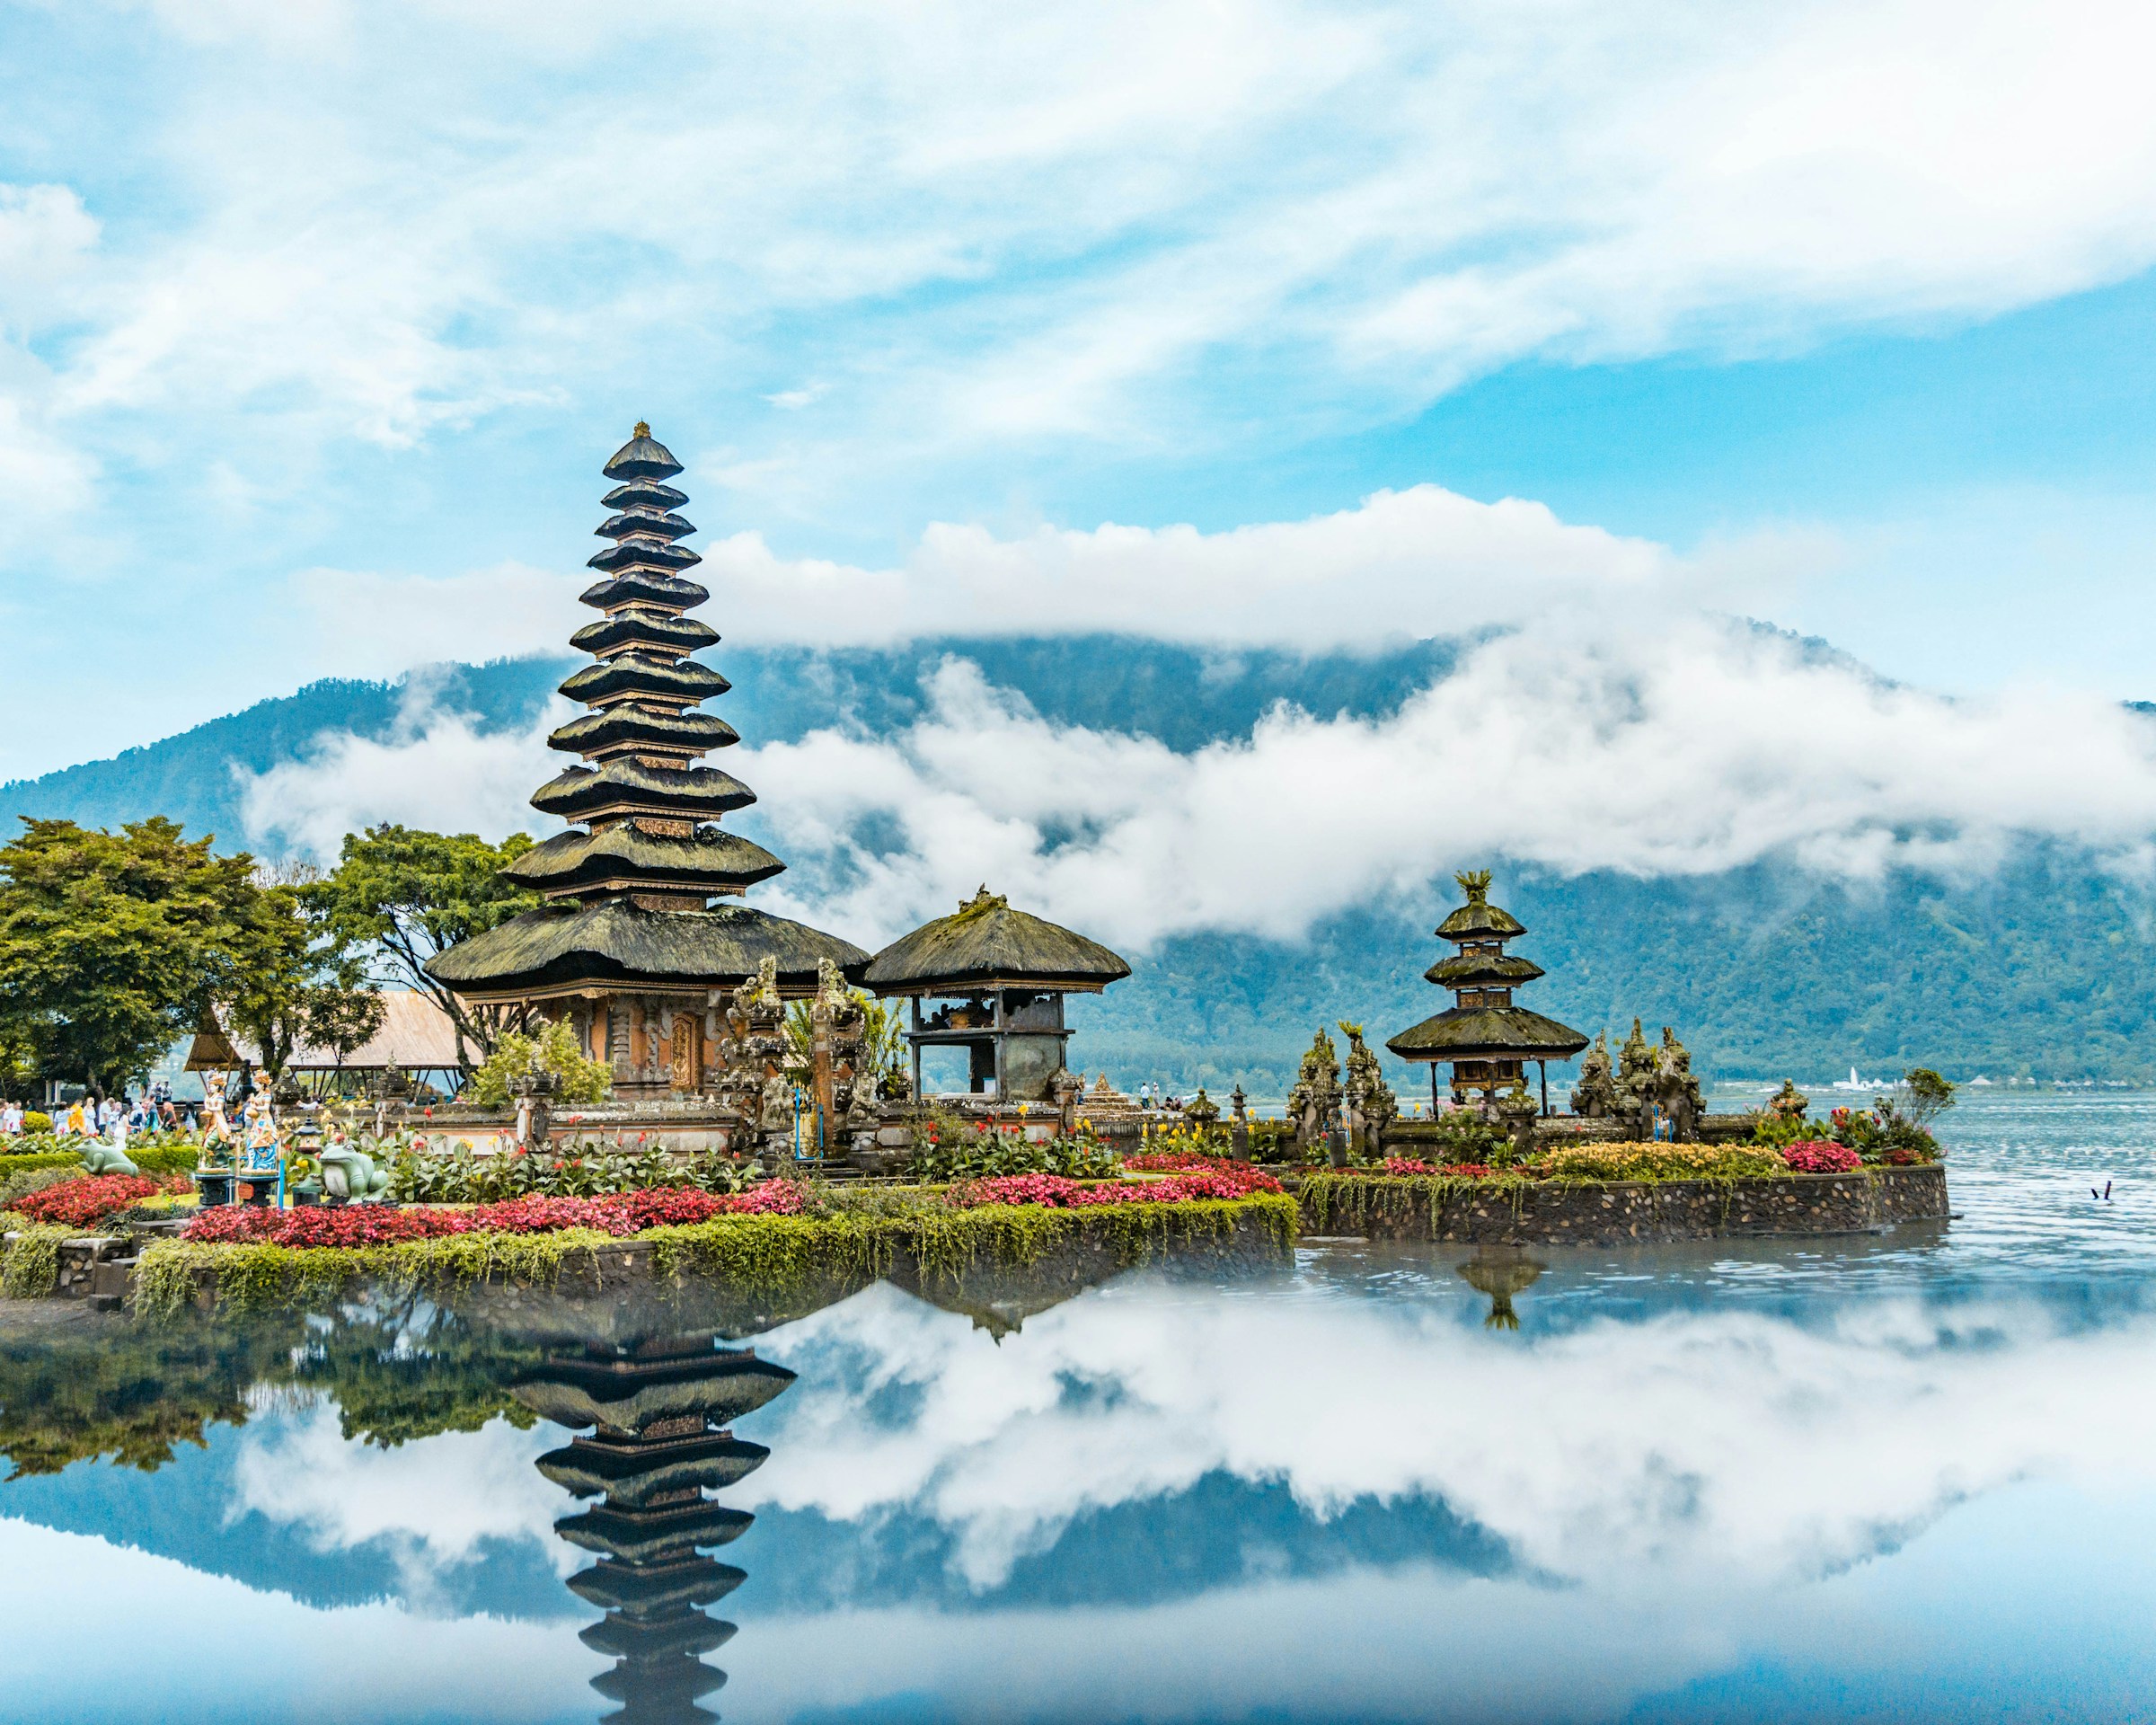 Vackert tempel i Bali vid en sjö omgiven av grönska och blå himmel i bakgrunden